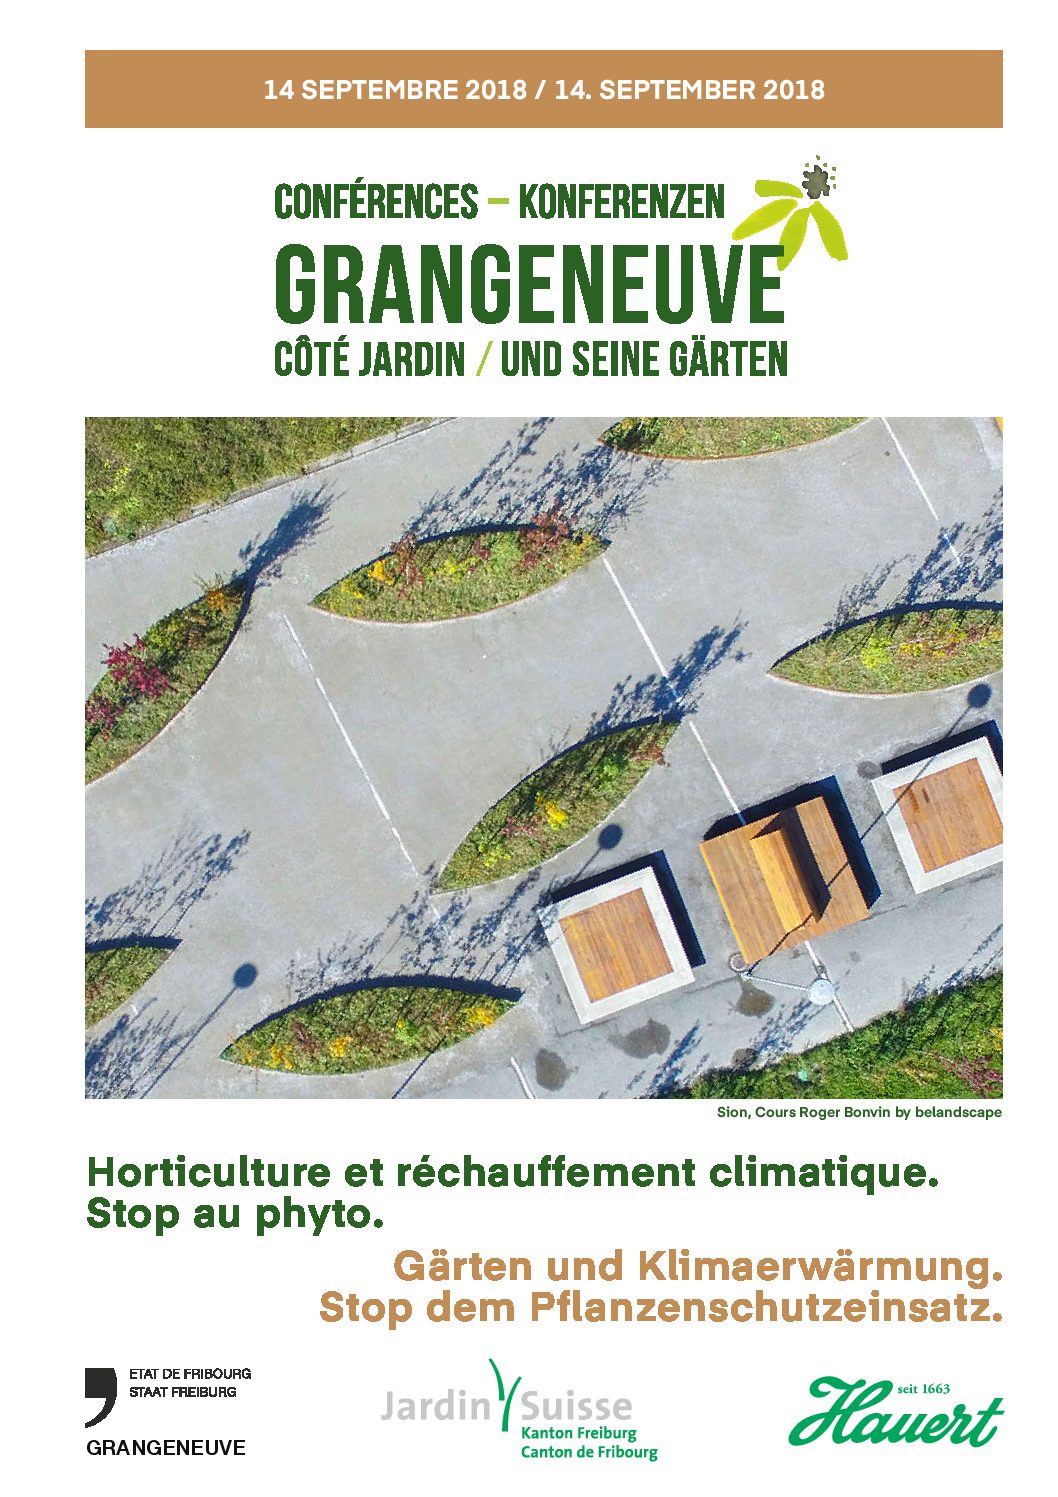 Conférence Grangeneuve – côté jardin: Horticulture et réchauffement climatique. Stop au phyto.